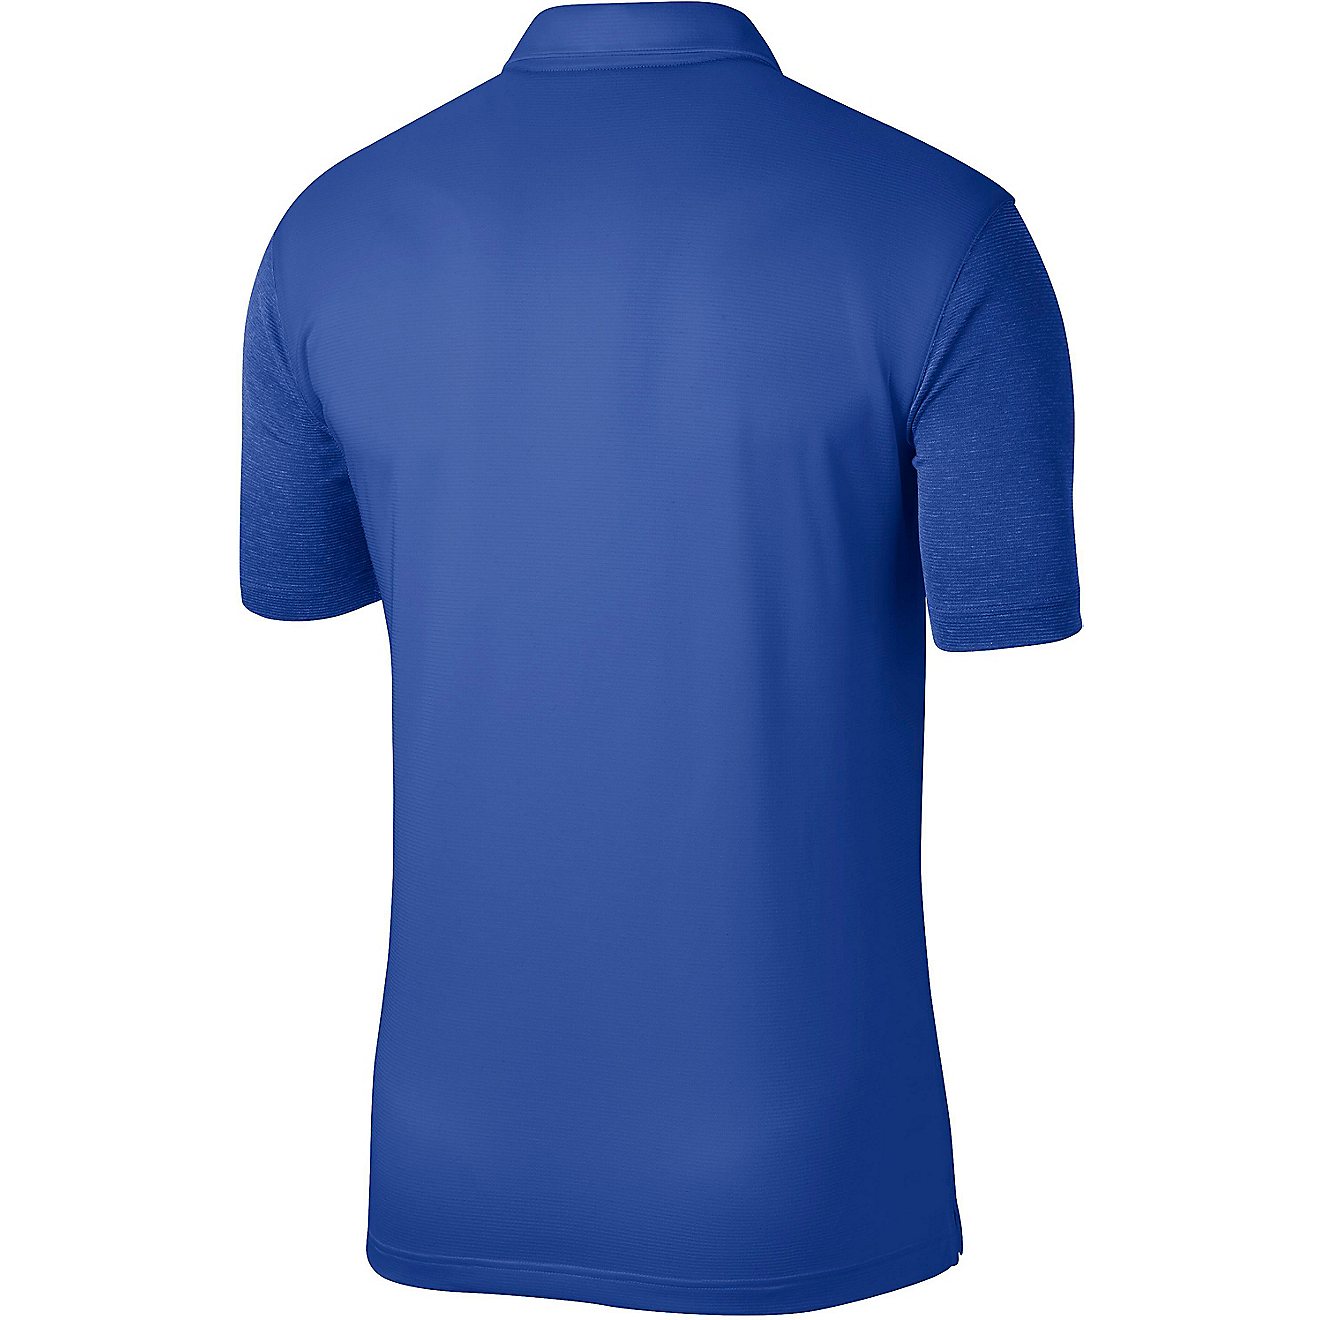 Nike Men's Duke University Dry 2 Polo Shirt | Academy